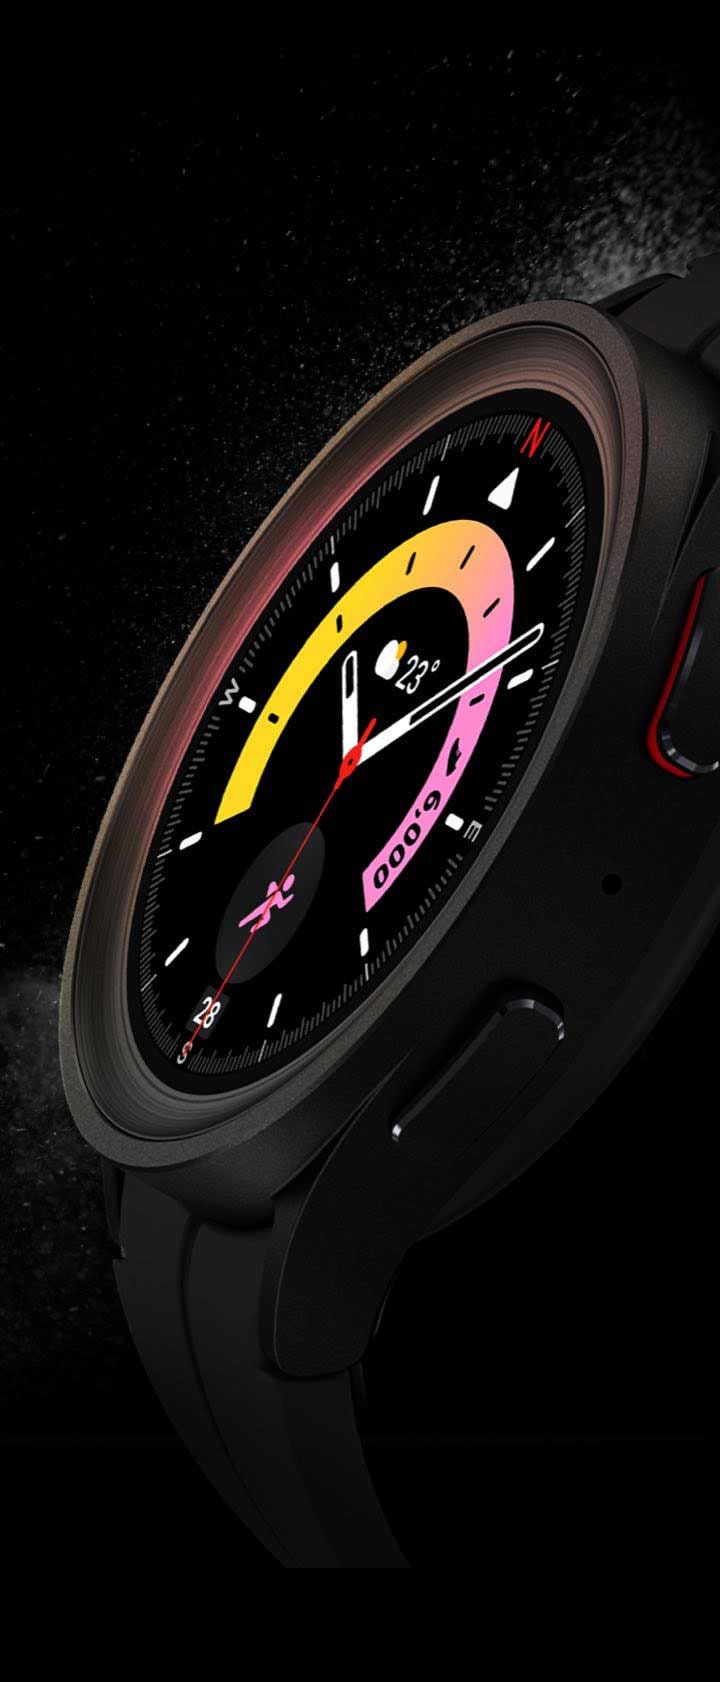 Galaxy Watch 5 LTE sẽ khiến bạn liên tưởng đến sự kết nối không giới hạn và sự tiện lợi trong mọi tình huống. Nếu bạn mong muốn một sản phẩm công nghệ thông minh đẳng cấp, Galaxy Watch 5 LTE chuẩn bị đem đến cho bạn những trải nghiệm tuyệt vời nhất về đồng hồ thông minh.